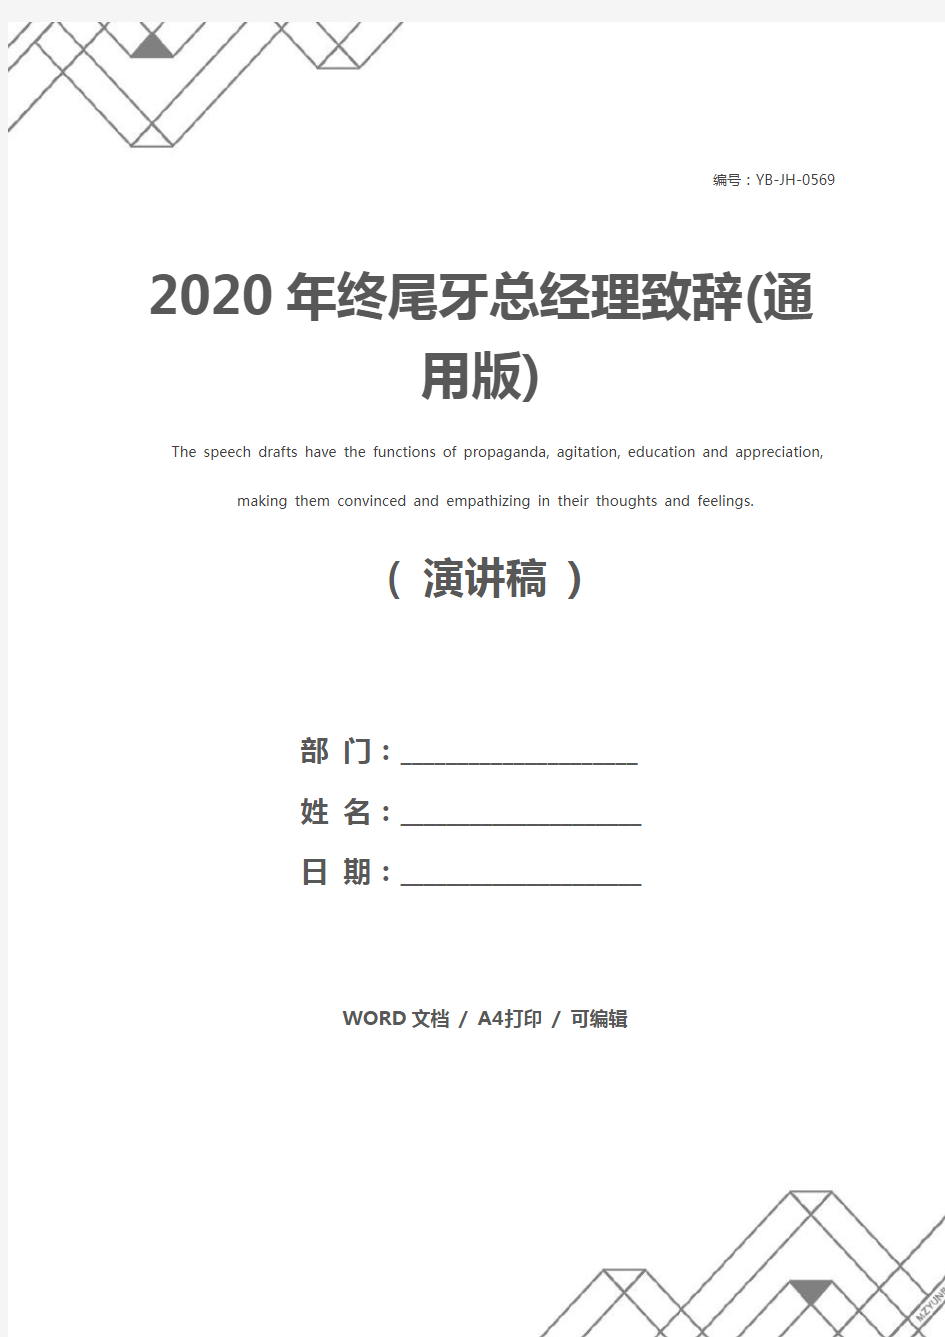 2020年终尾牙总经理致辞(通用版)